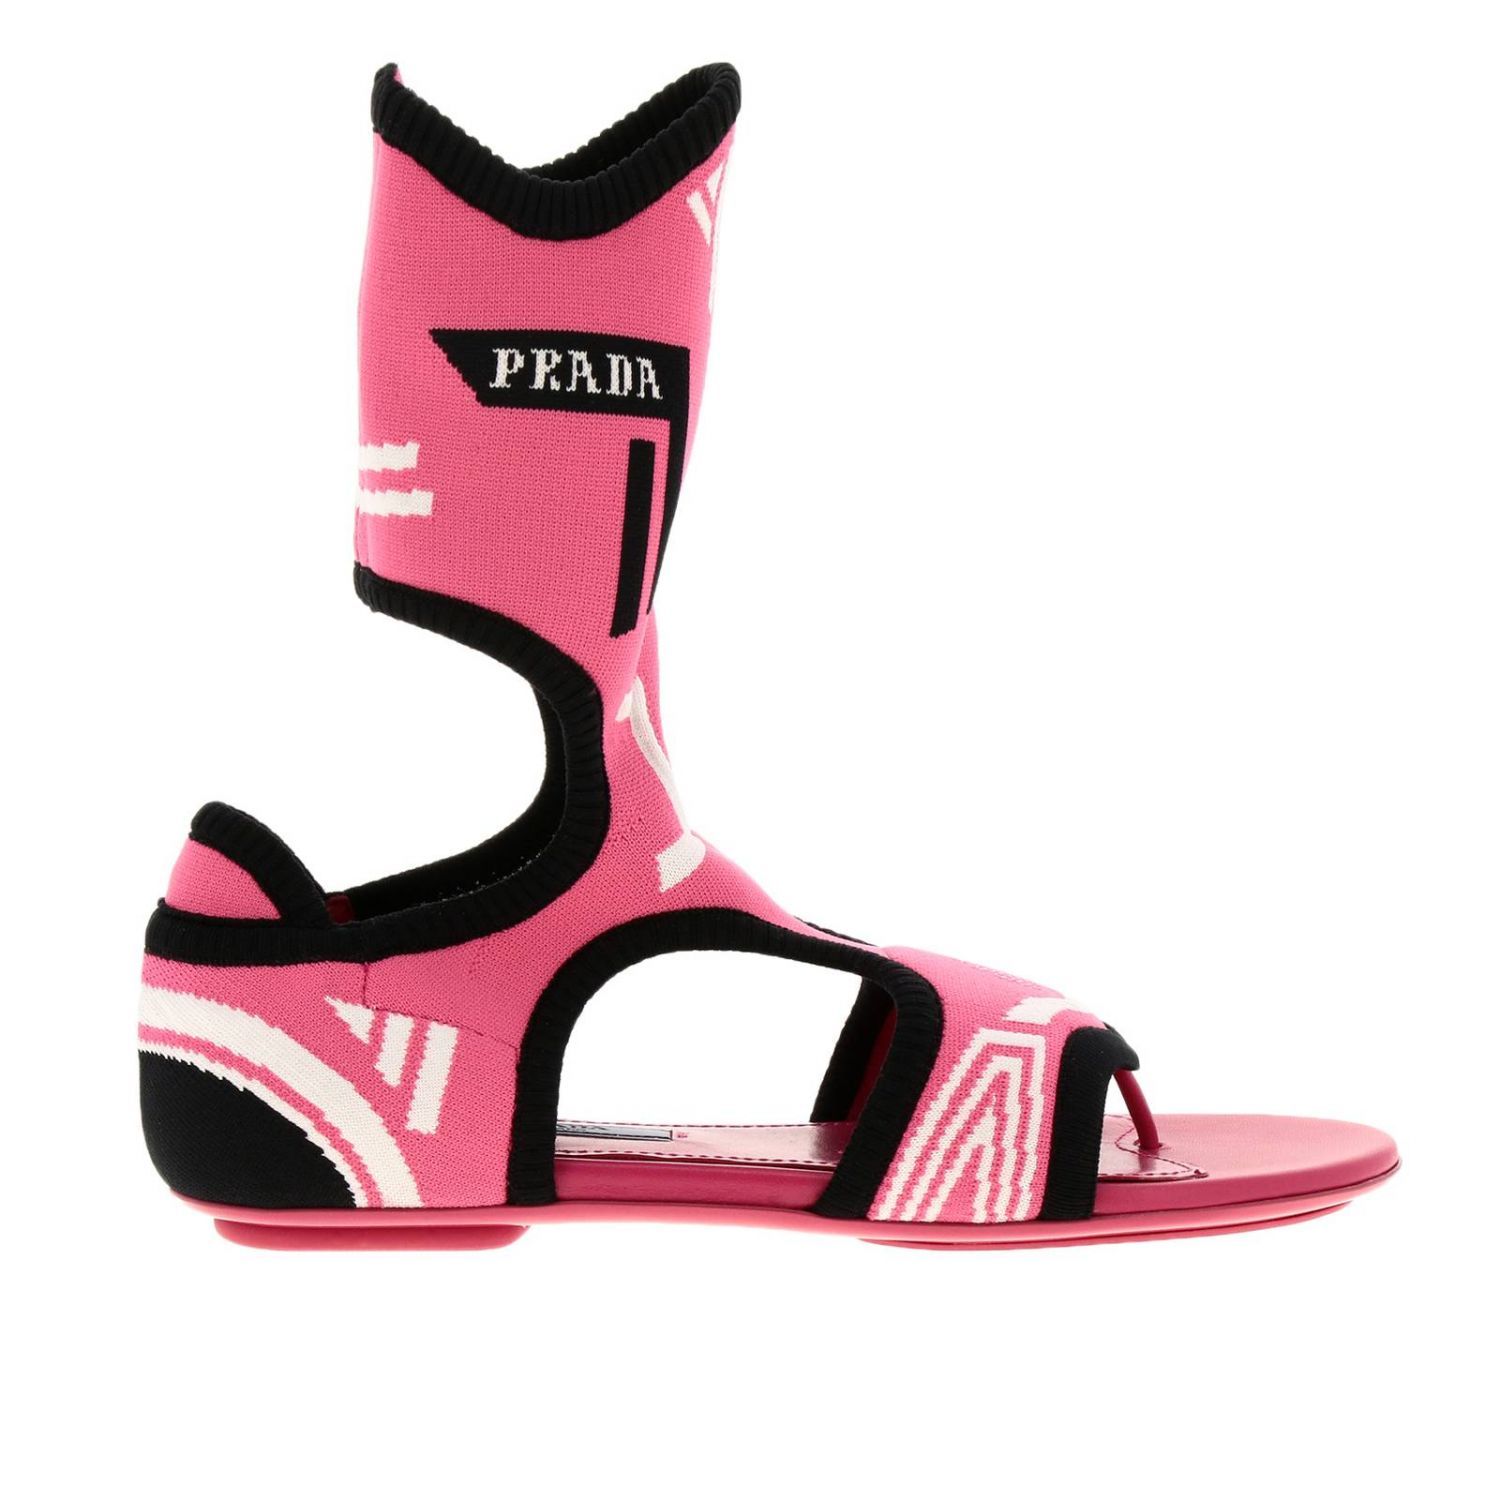 prada shoes pink